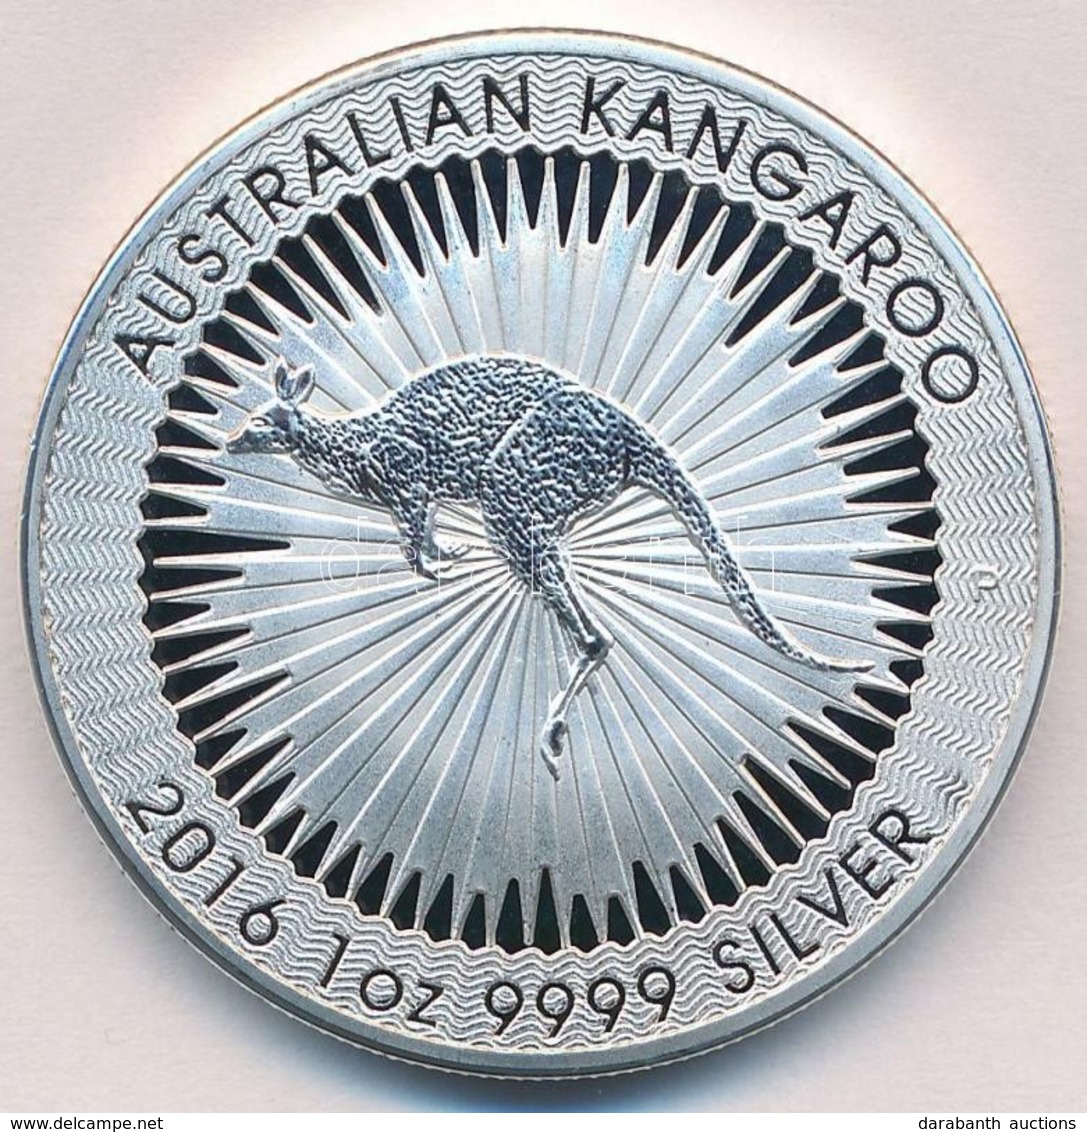 Ausztrália 2016. 1$ 'II. Erzsébet / Ausztrál Kenguru' (1oz/0.999) T:BU
Australia 2016. 1 Dollar 'Elisabeth II / Australi - Unclassified